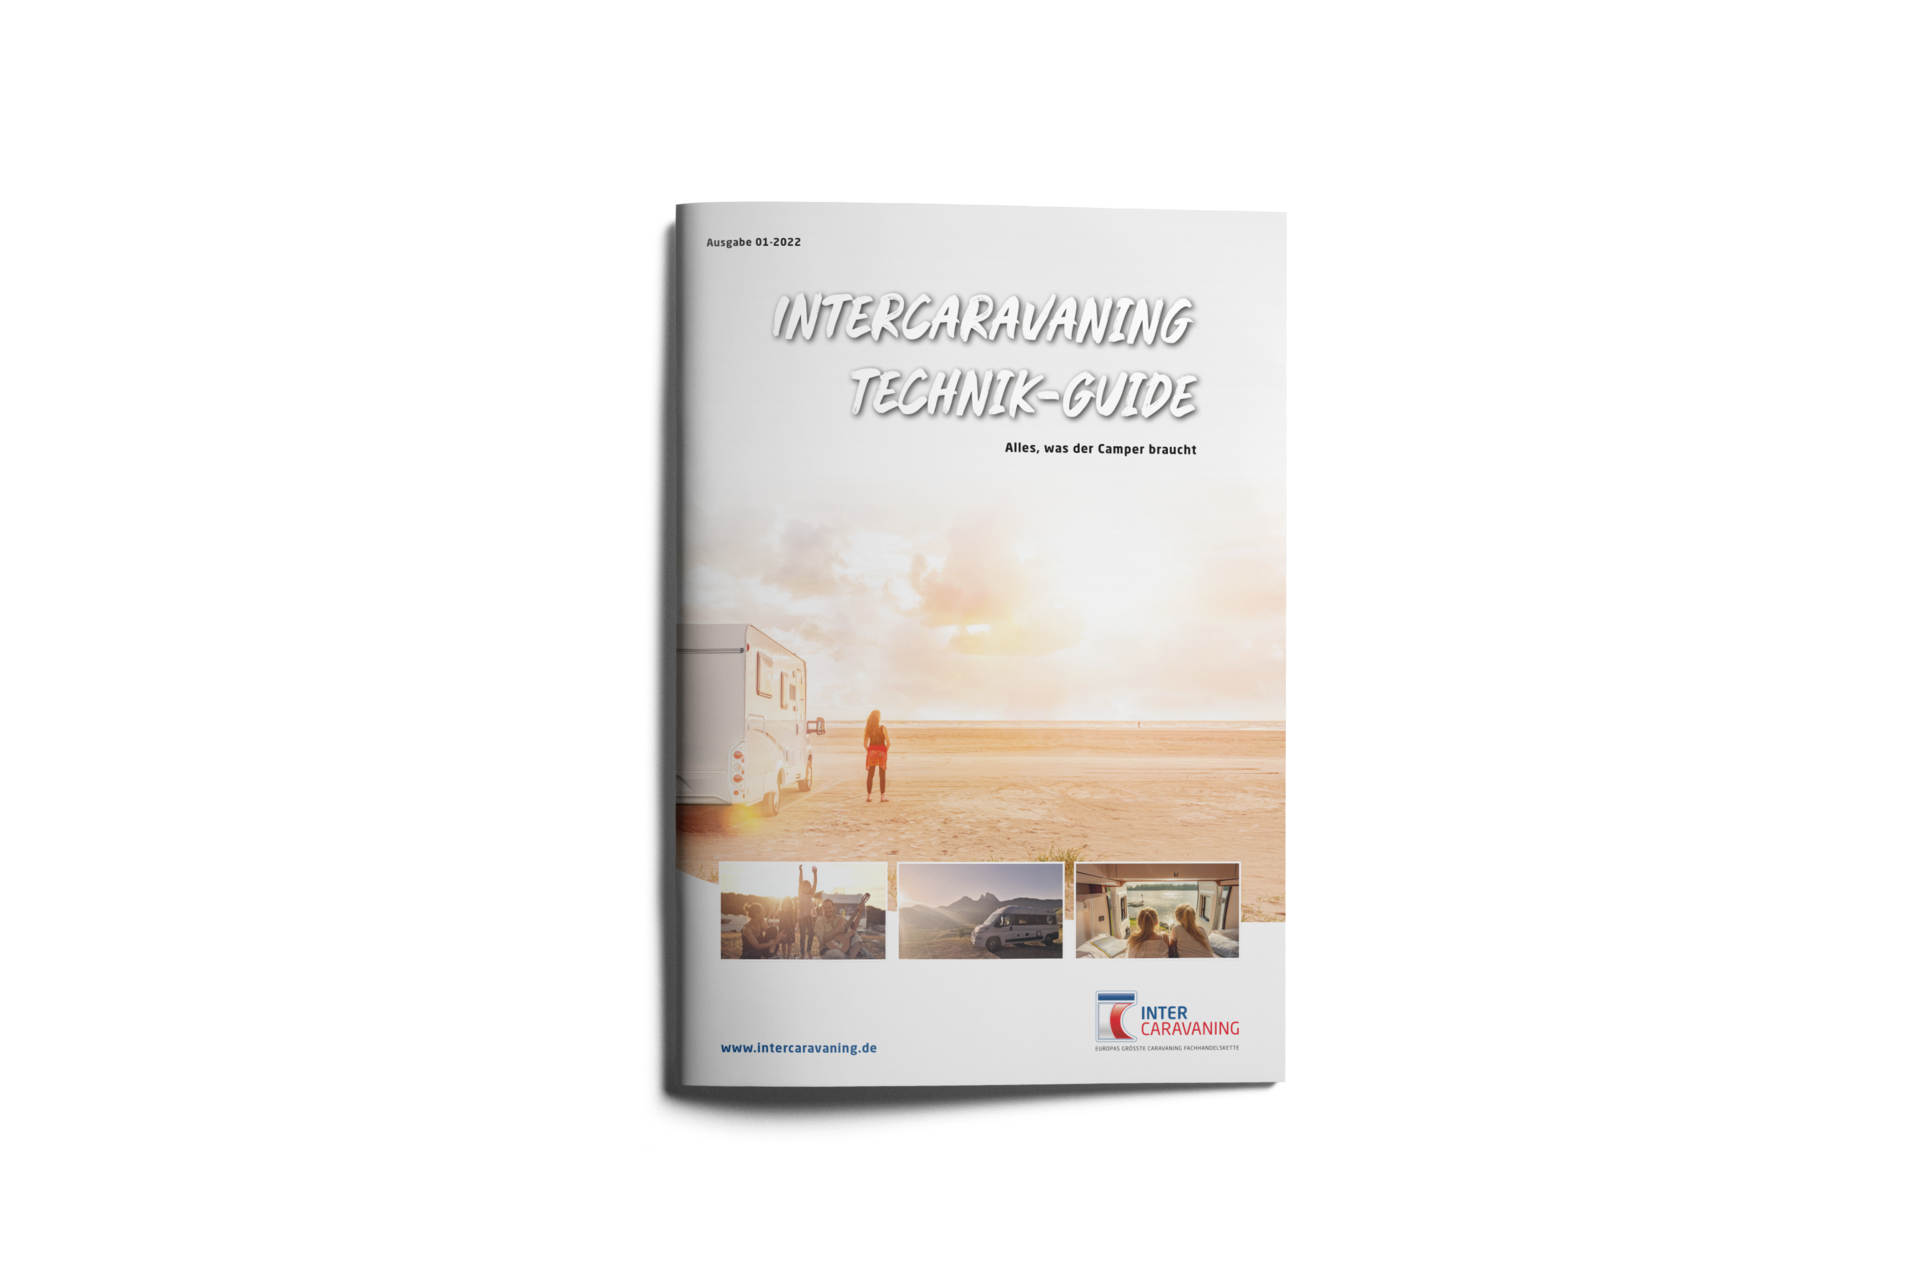 InterCaravaning Technik-Guide für Caravaning-Technik - jetzt bei Ihrem Caravan-Center Dahnke in Stralsund